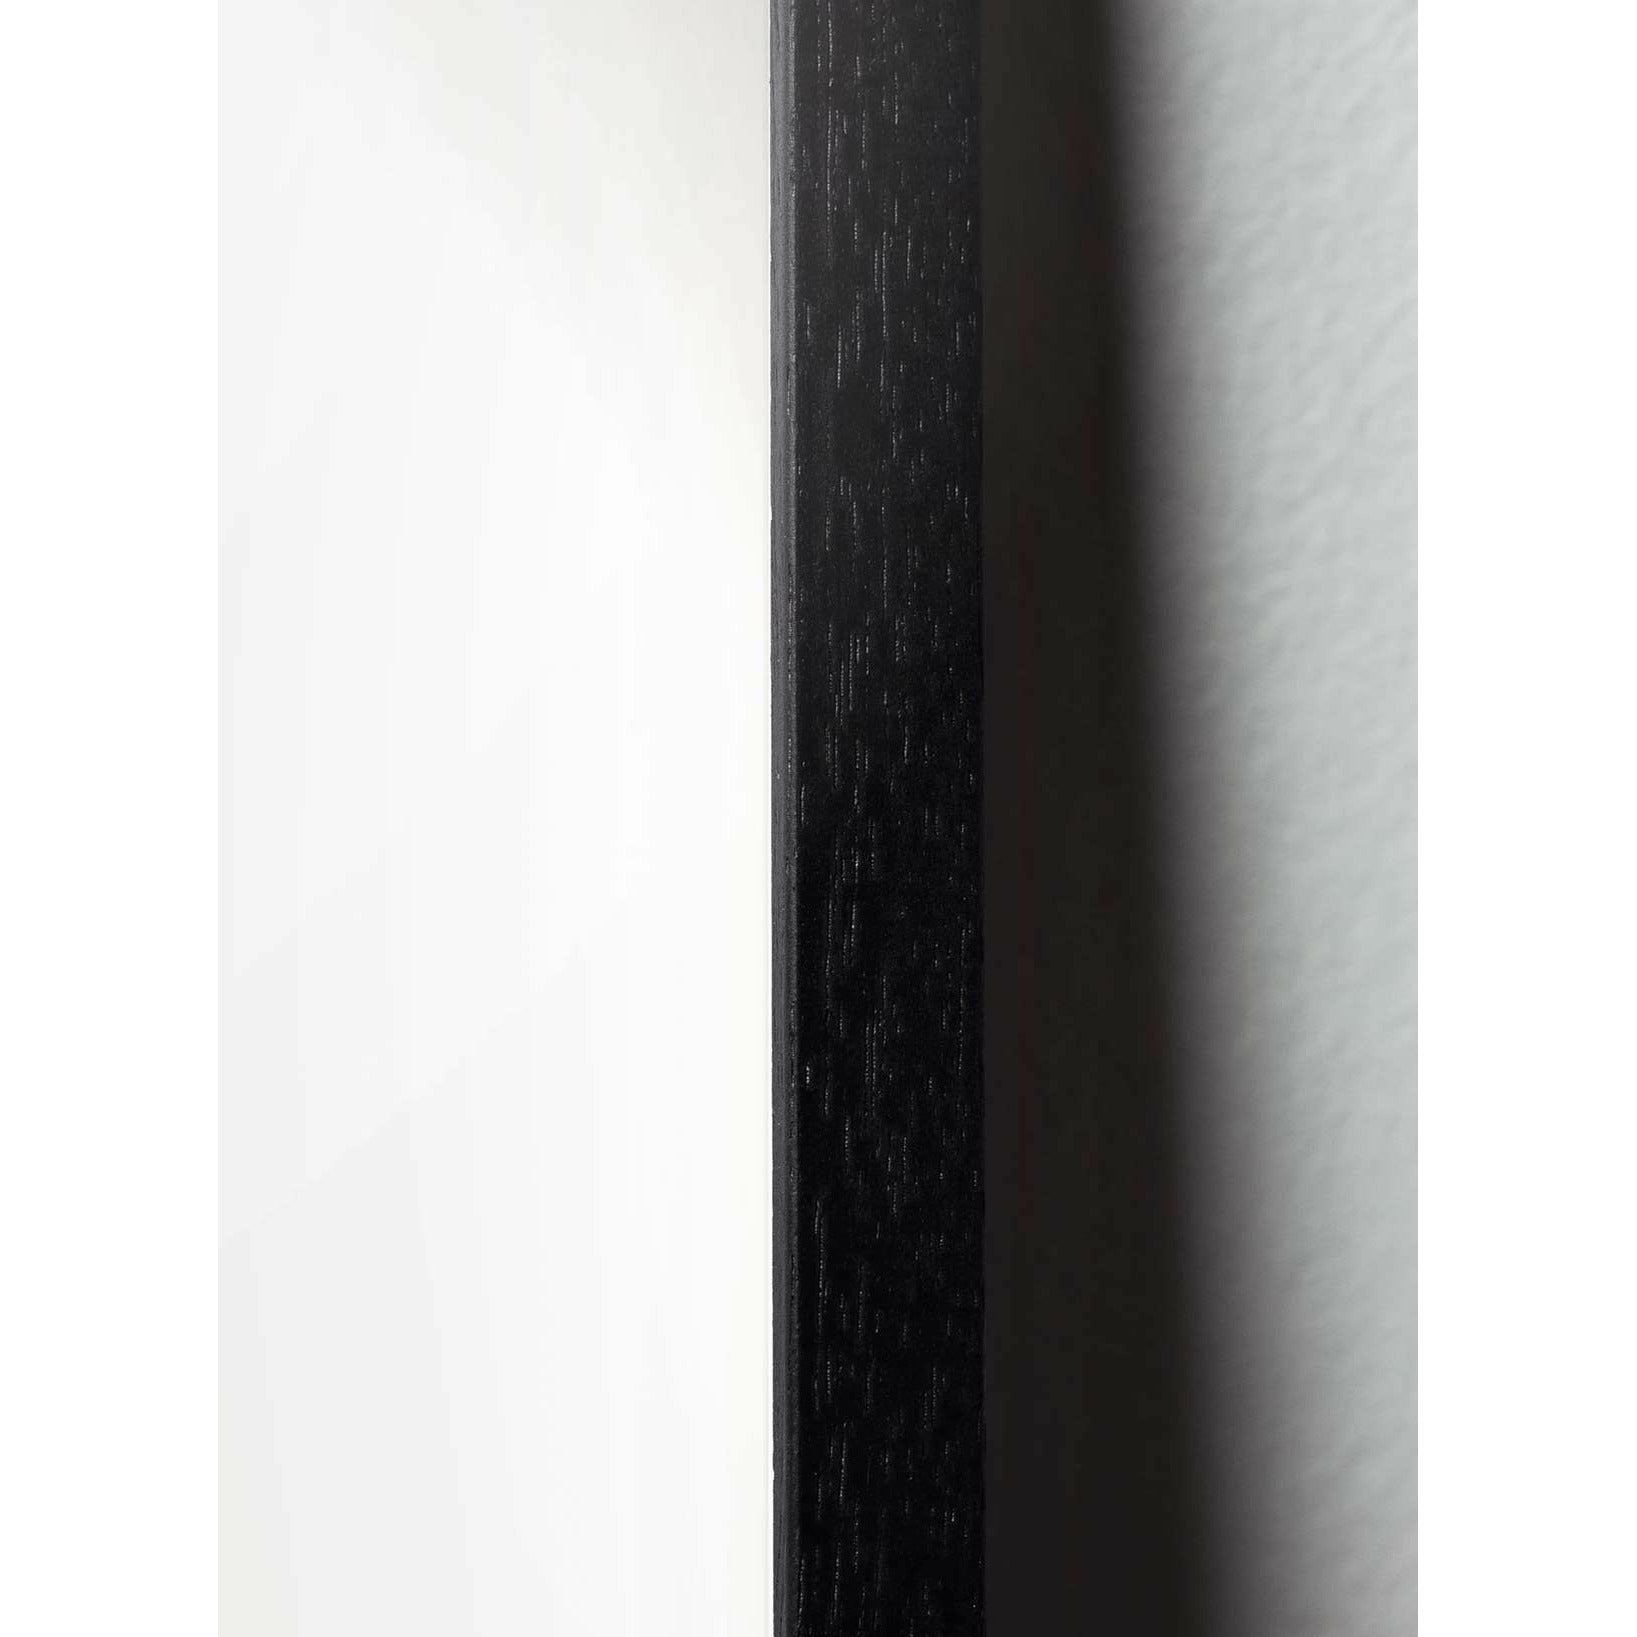 Plakát křížového formátu vajec z mozku, rám v černém lakovaném dřevu 30x40 cm, černá